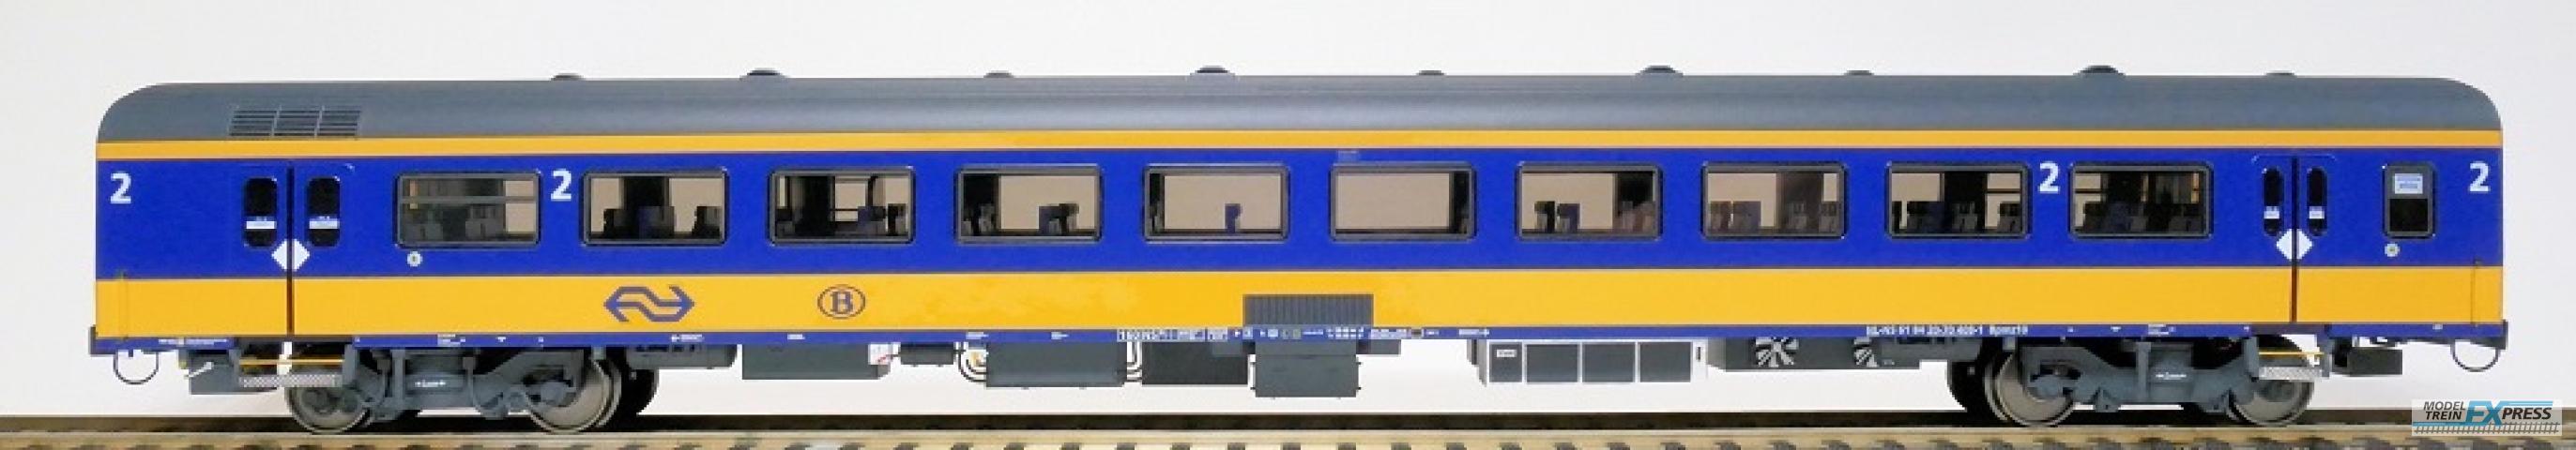 Exact-train 11028 NS ICRm Garnitur 2 (Amsterdam - Brussel) für die Hsl-Strecke eingesetzt Reisezugwagen Bpmz10 ( Farbe Gelb / Blau), Ep. VI